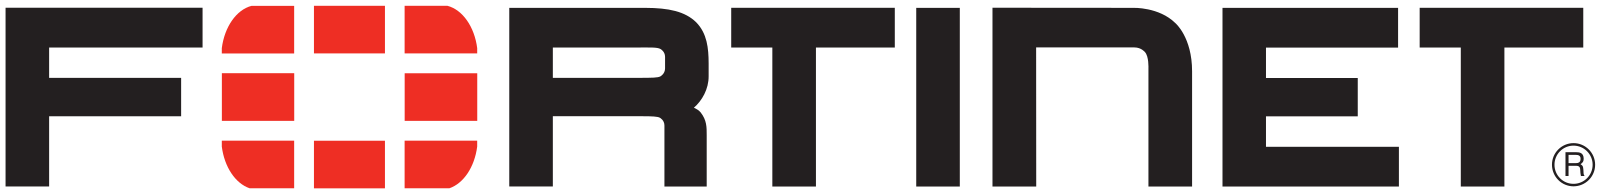 Fortinet Logo.svg